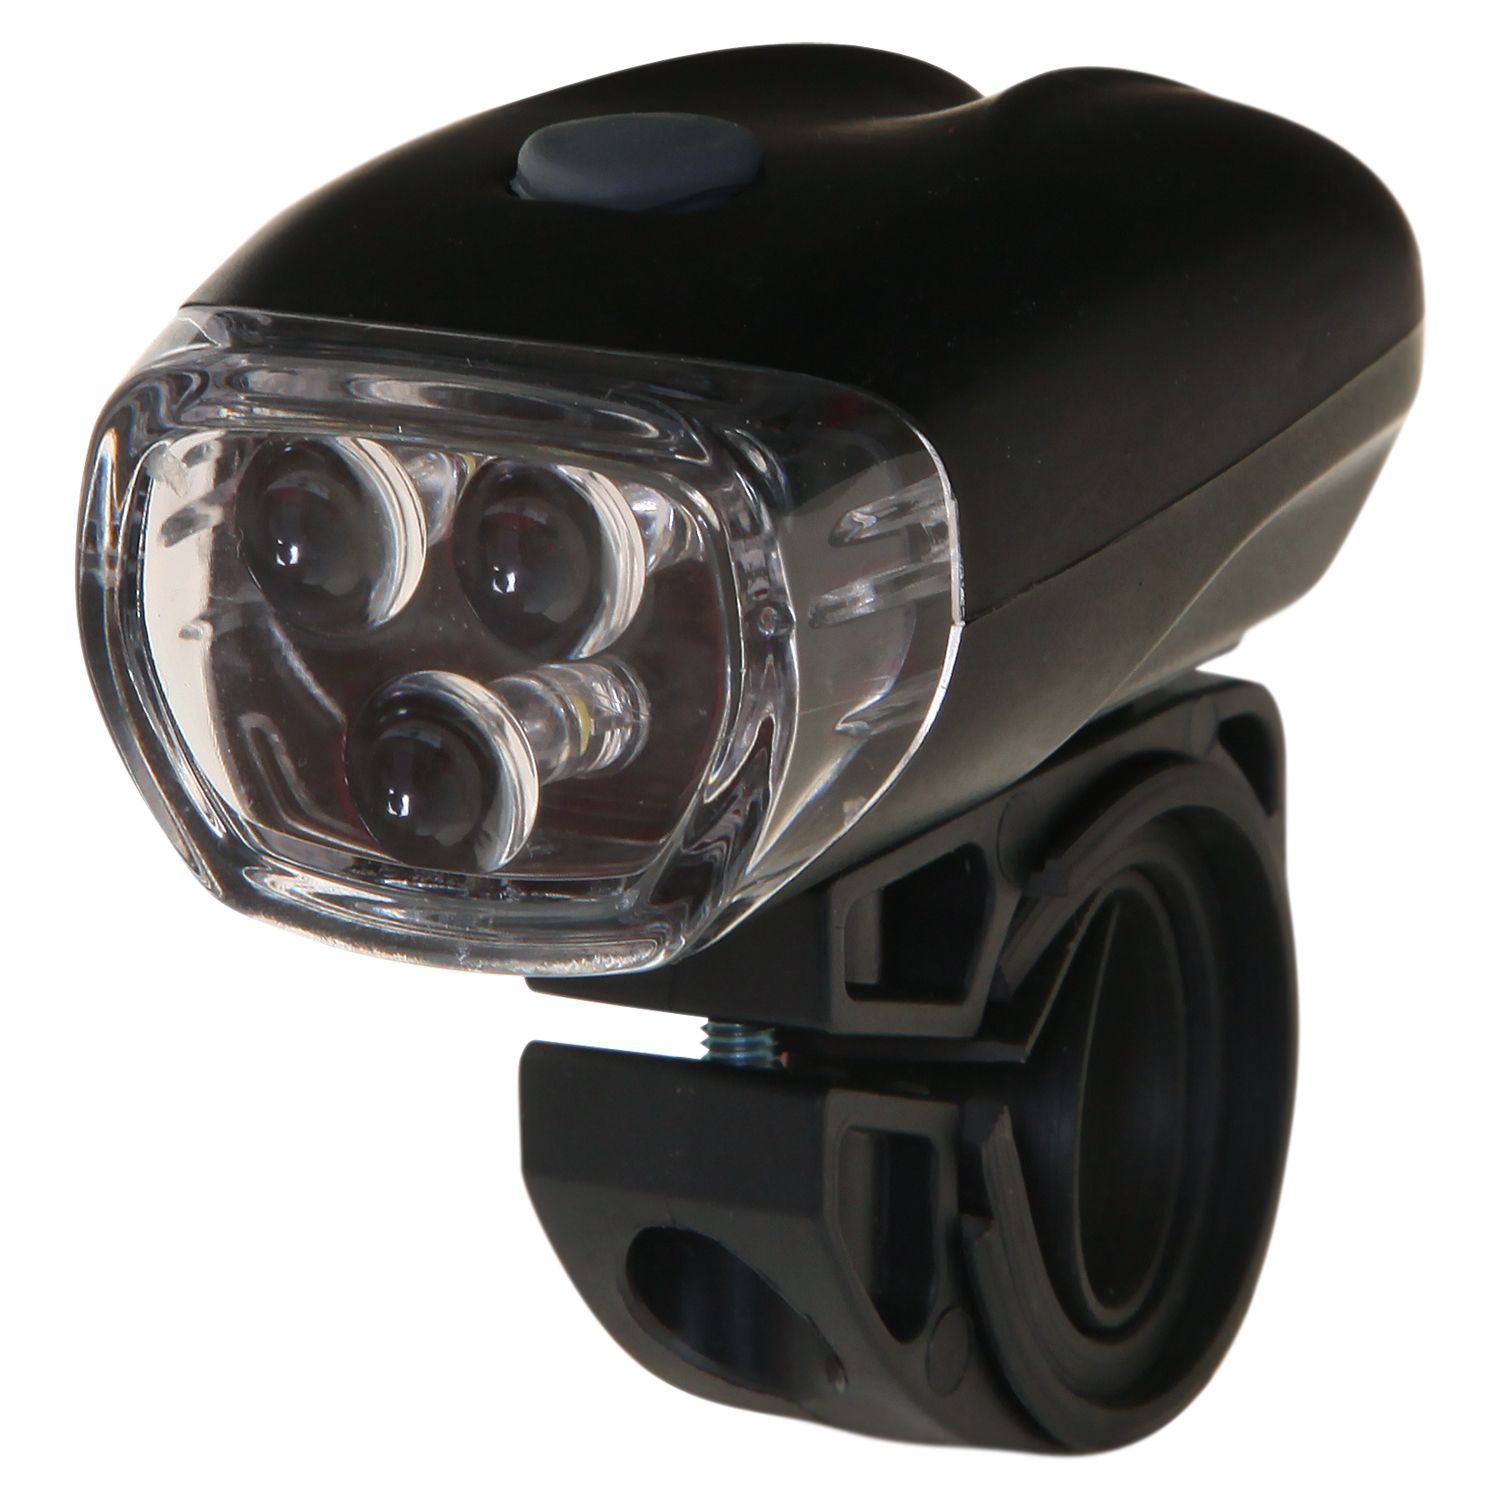 Велосипедный фонарь передний Stg JY-566